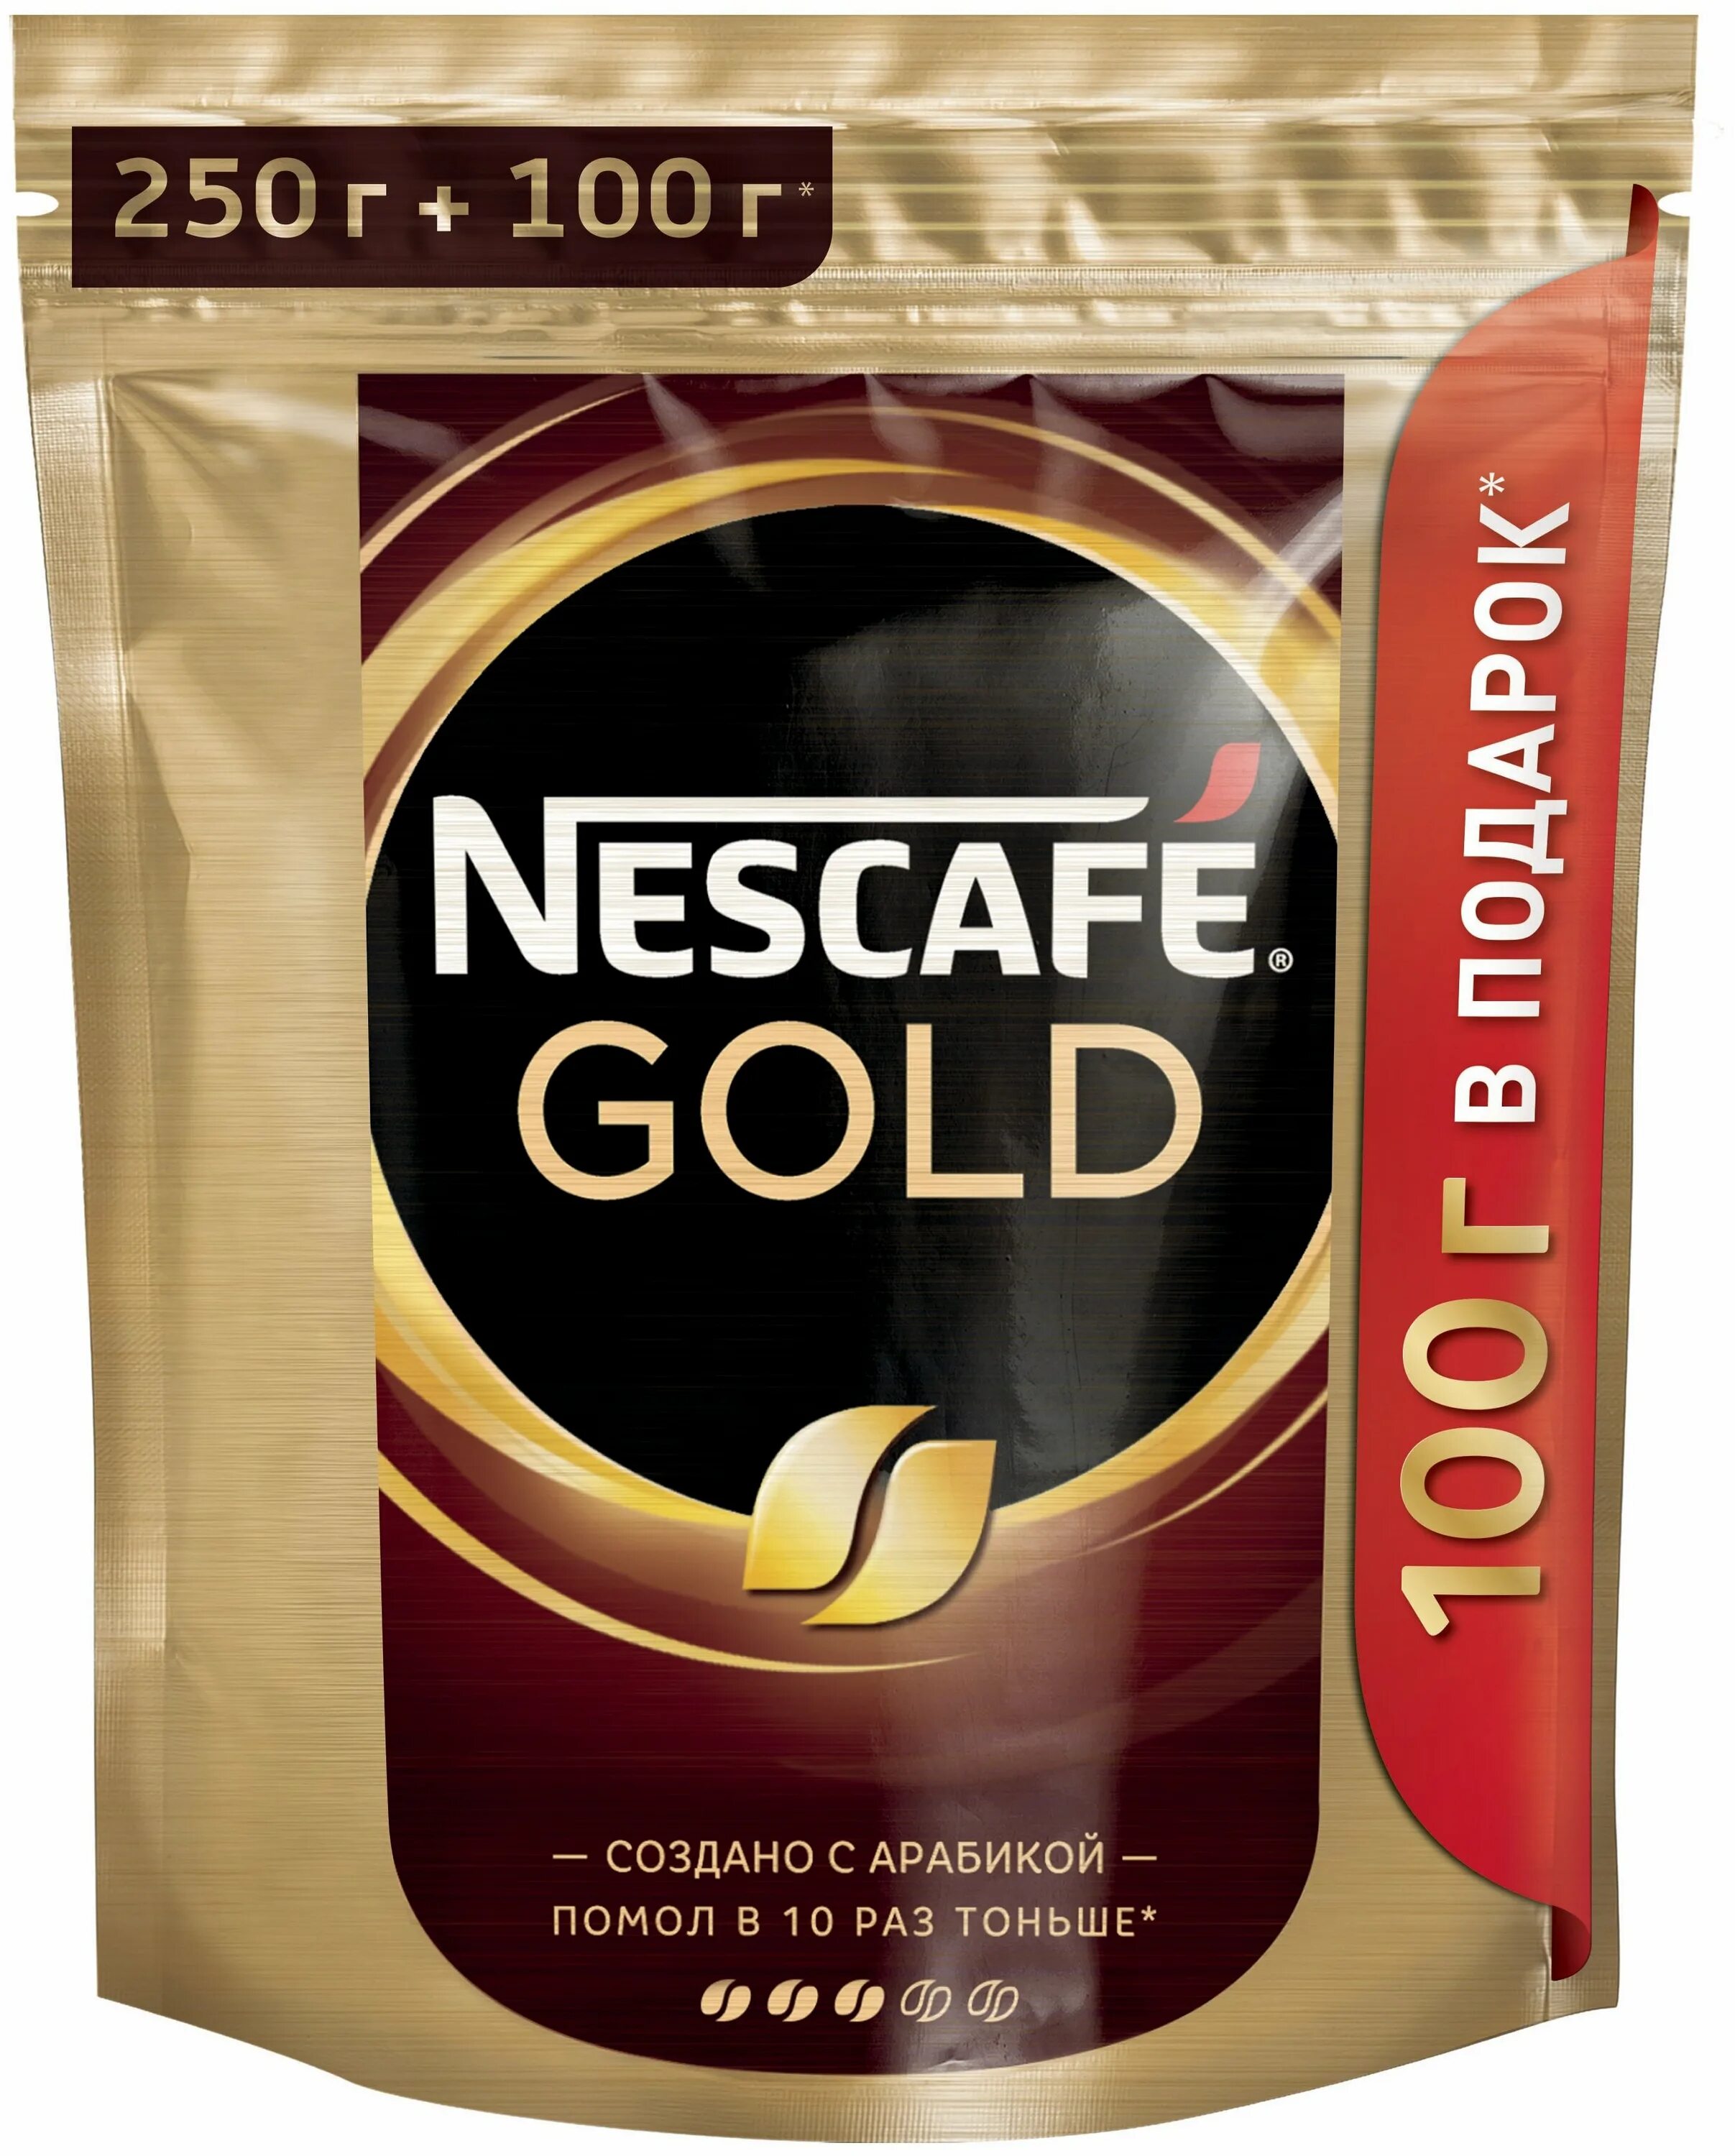 Кофе нескафе голд 320. Nescafe Gold 250г. Nescafe Gold 250. Nescafe Gold 250+50г. Кофе Нескафе Голд 250.